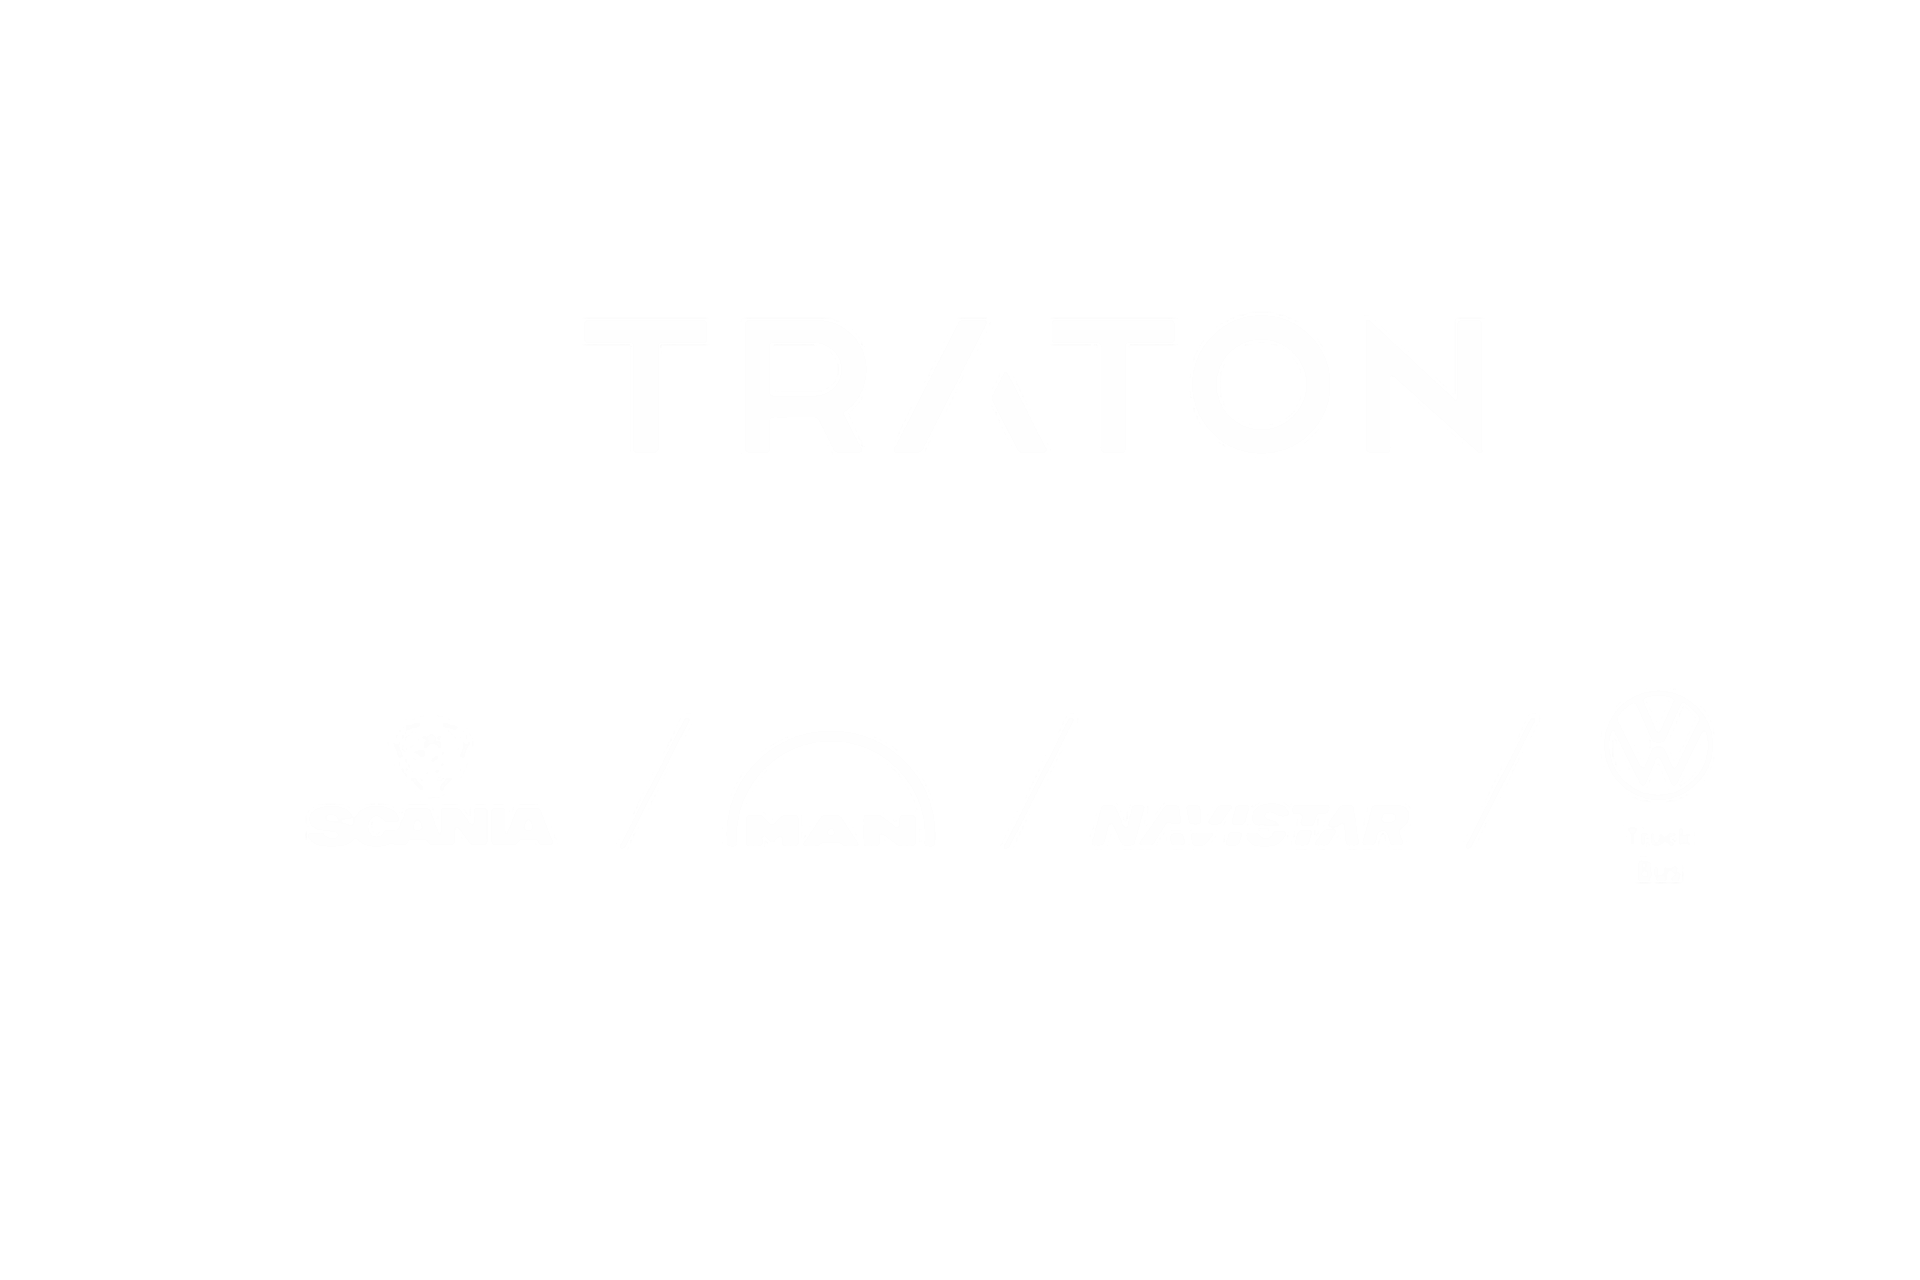 TRATON Logo mit den Logos der anderen Marken Scania, MAN, VWCO, Navistar, RIO in weiß